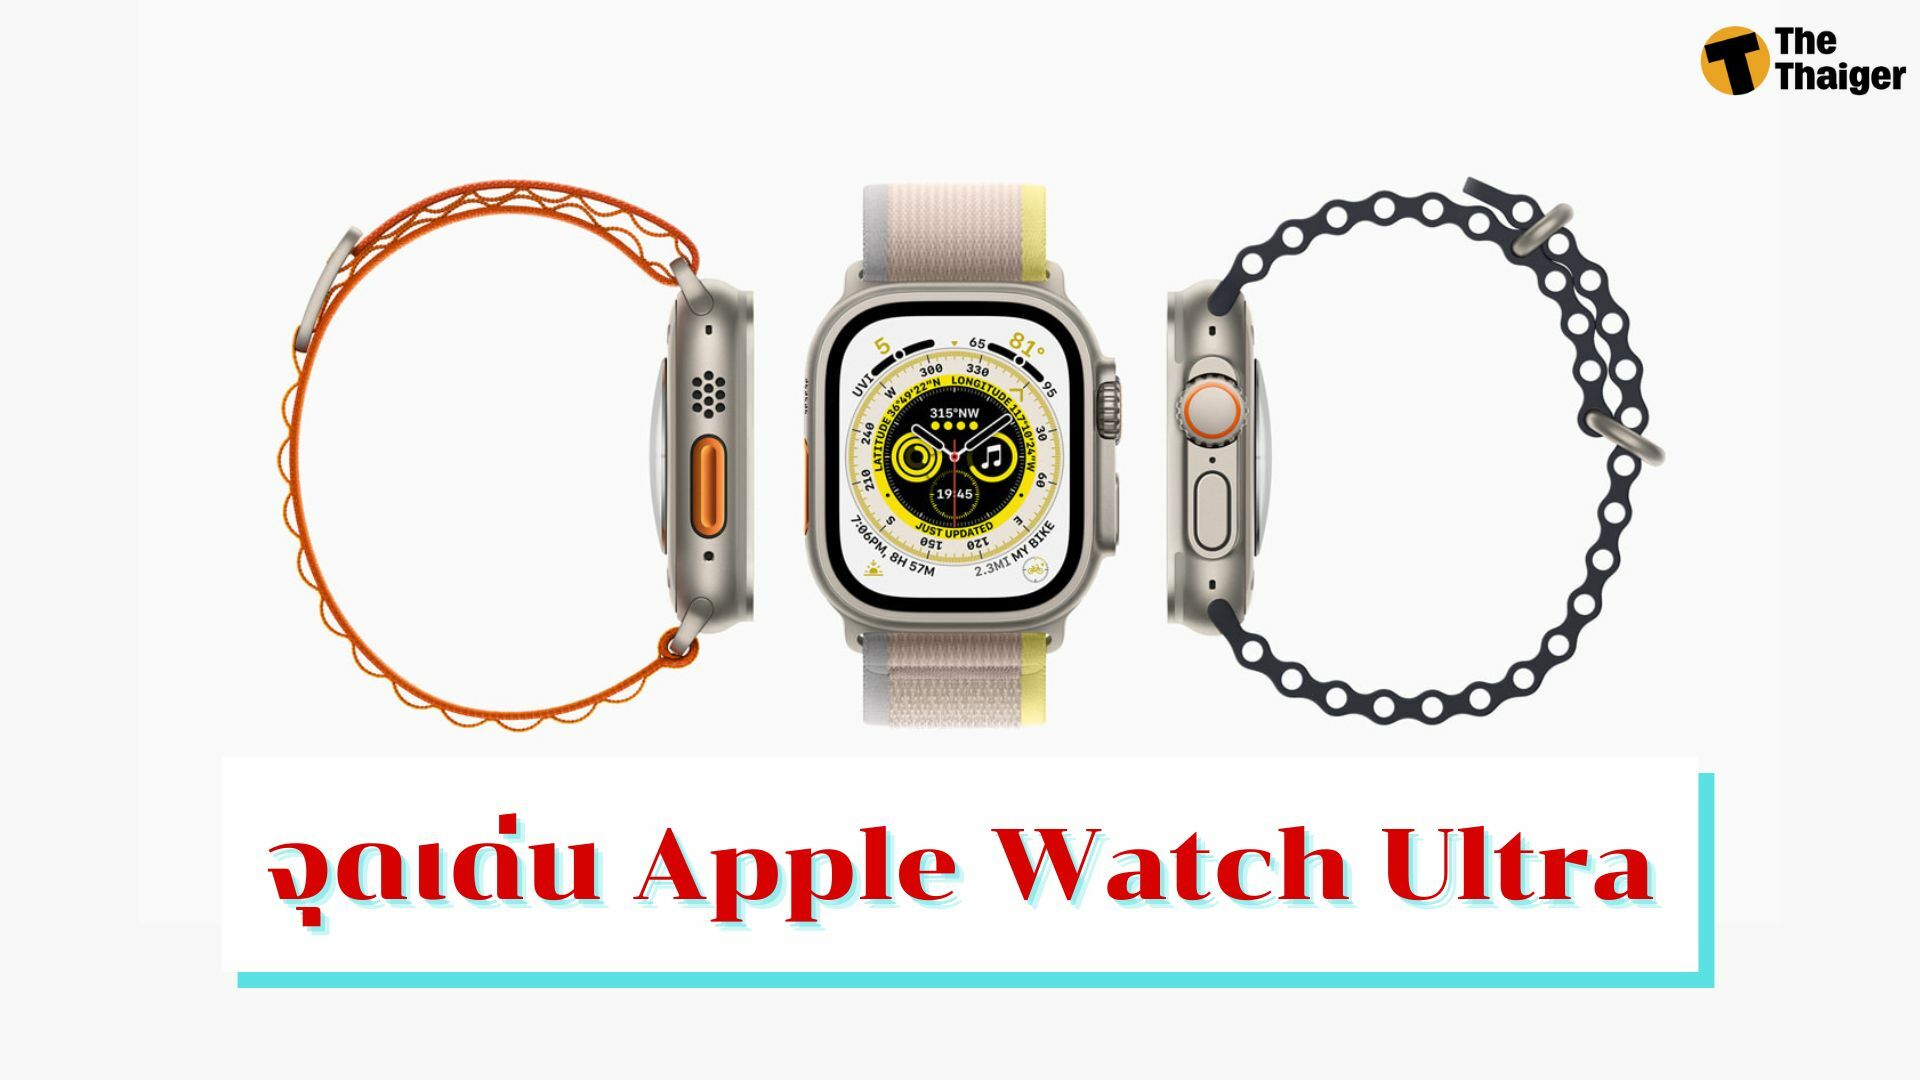 เปิดตัว Apple Watch Ultra